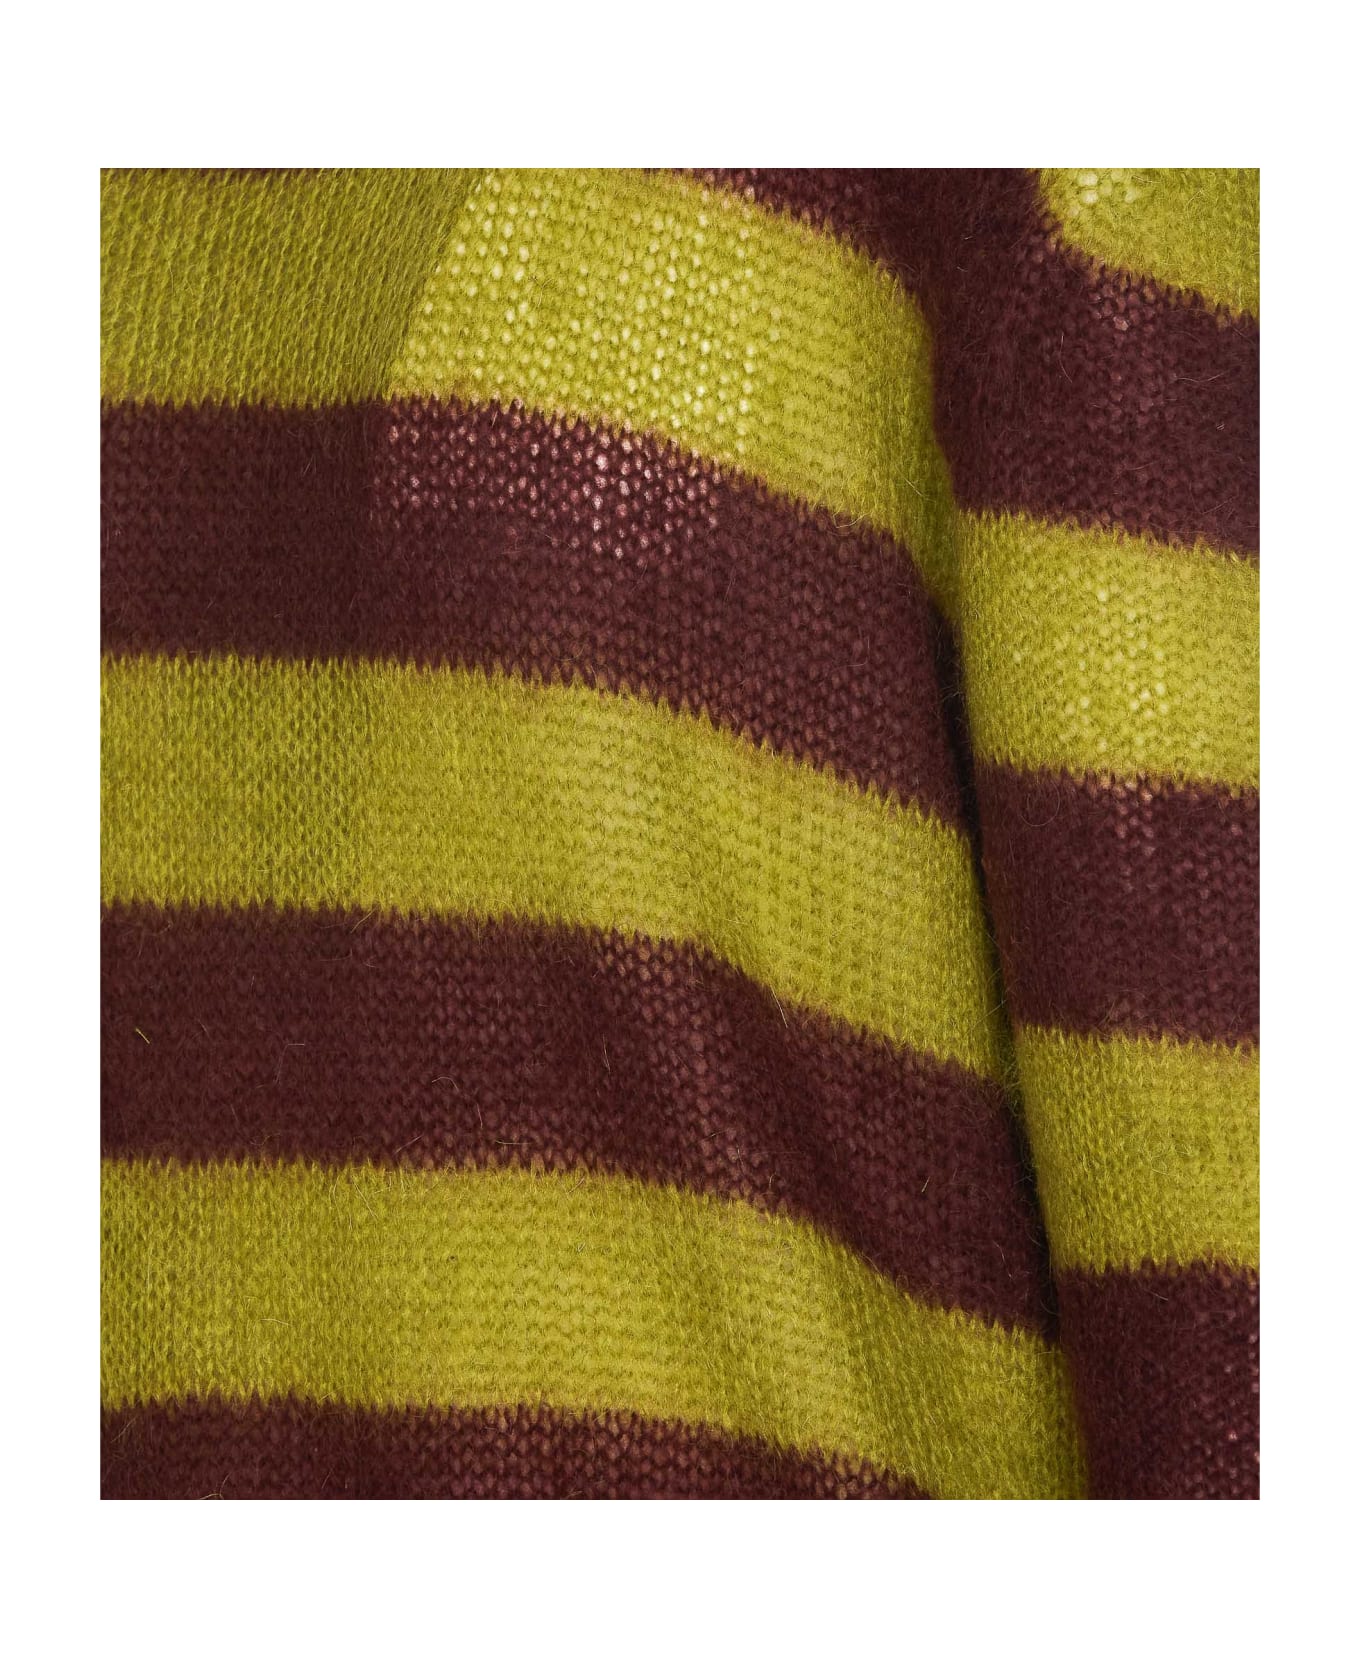 Marni Striped Sweater - Green